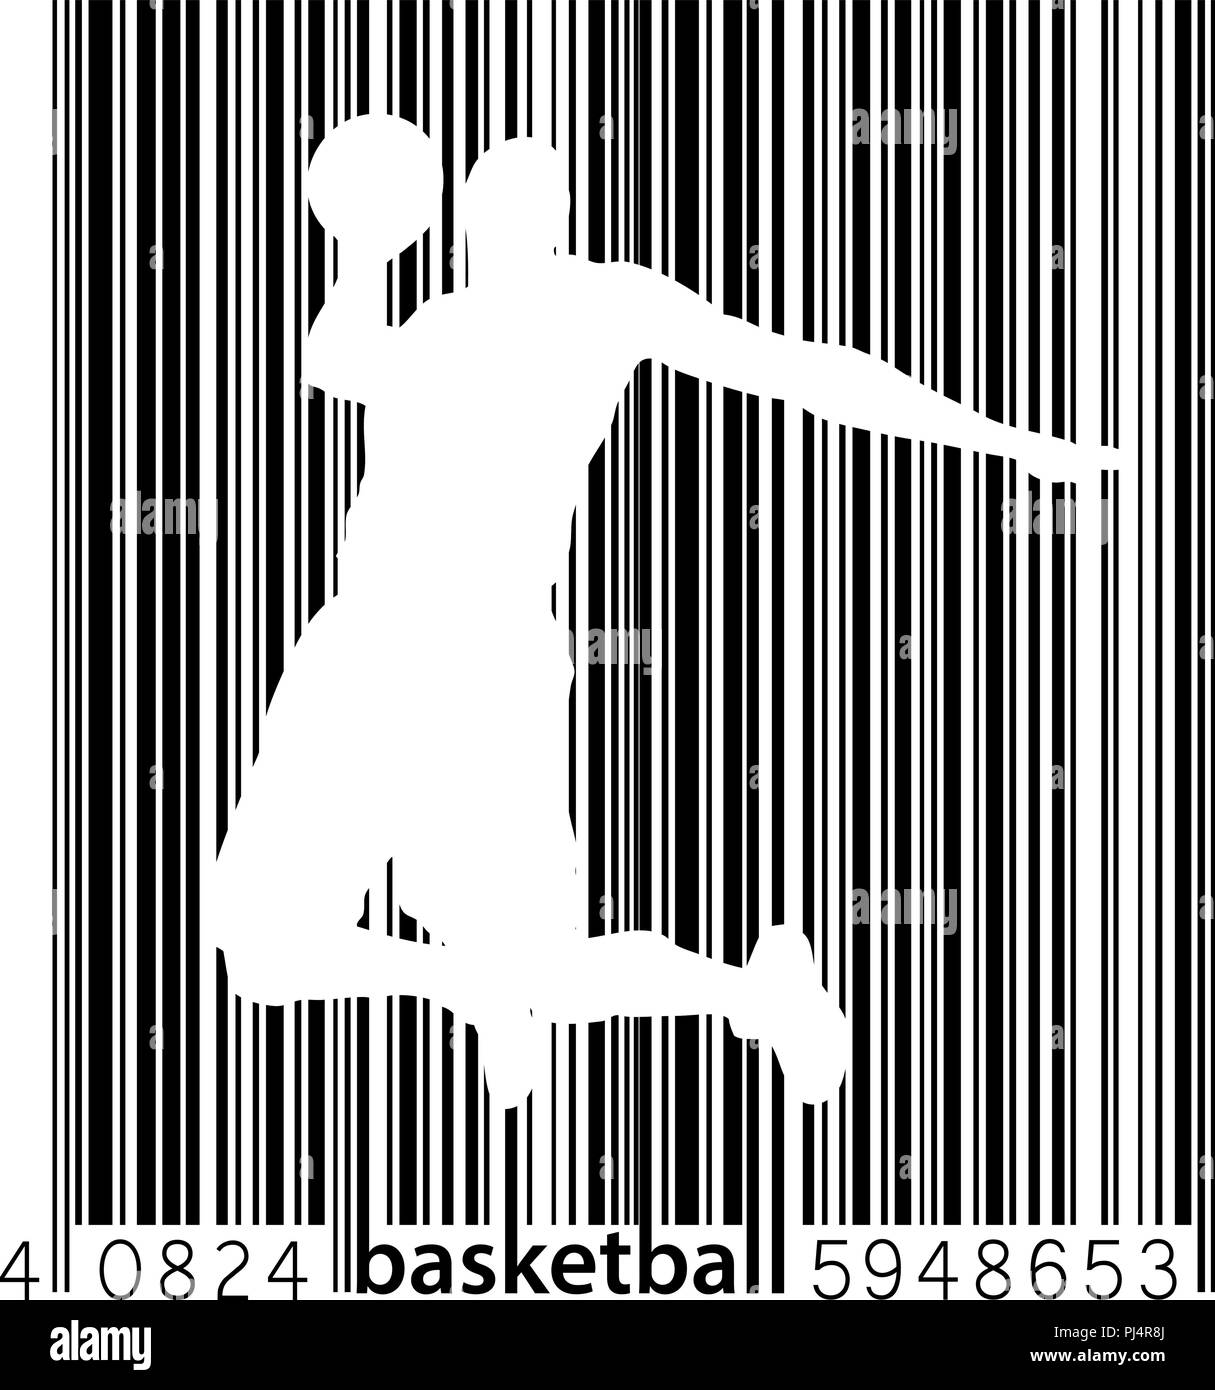 Silhouette d'un joueur de basket-ball. Arrière-plan et le texte sur un calque séparé, la couleur peut être changée en un clic Illustration de Vecteur